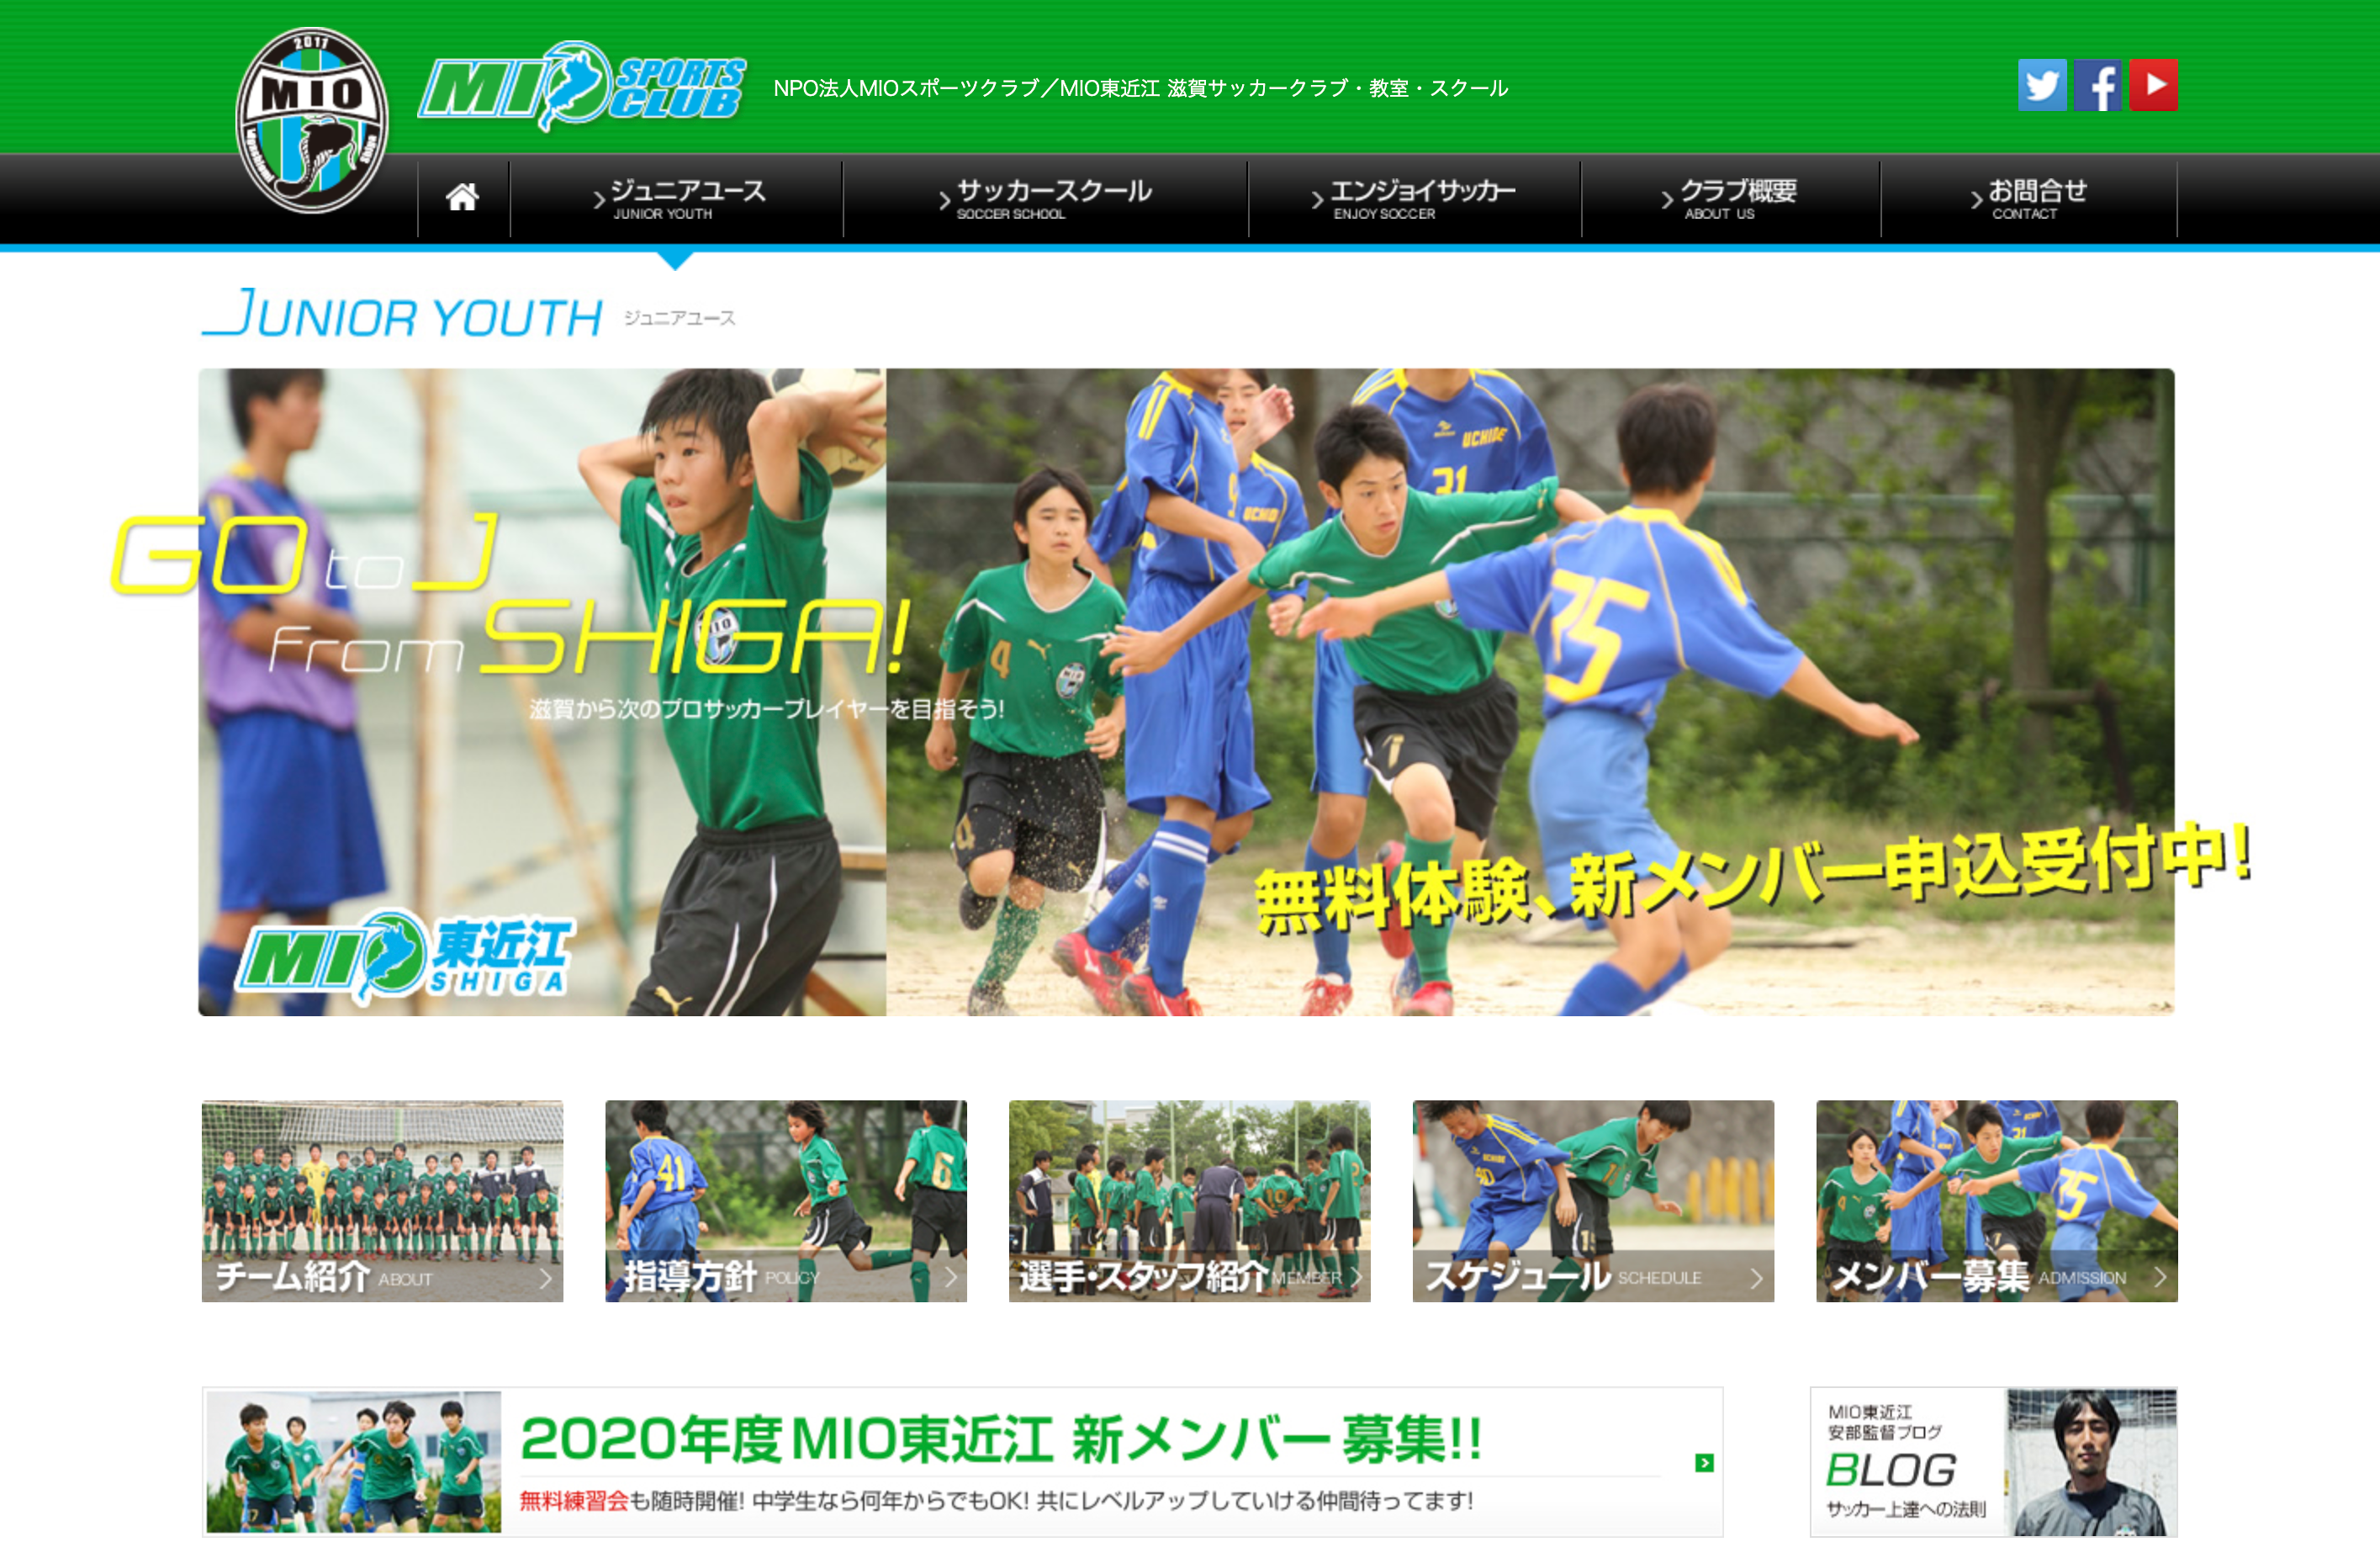 Npo法人 Mioスポーツクラブホームページ 滋賀県のブランディング マーケティング会社 Starbride Inc